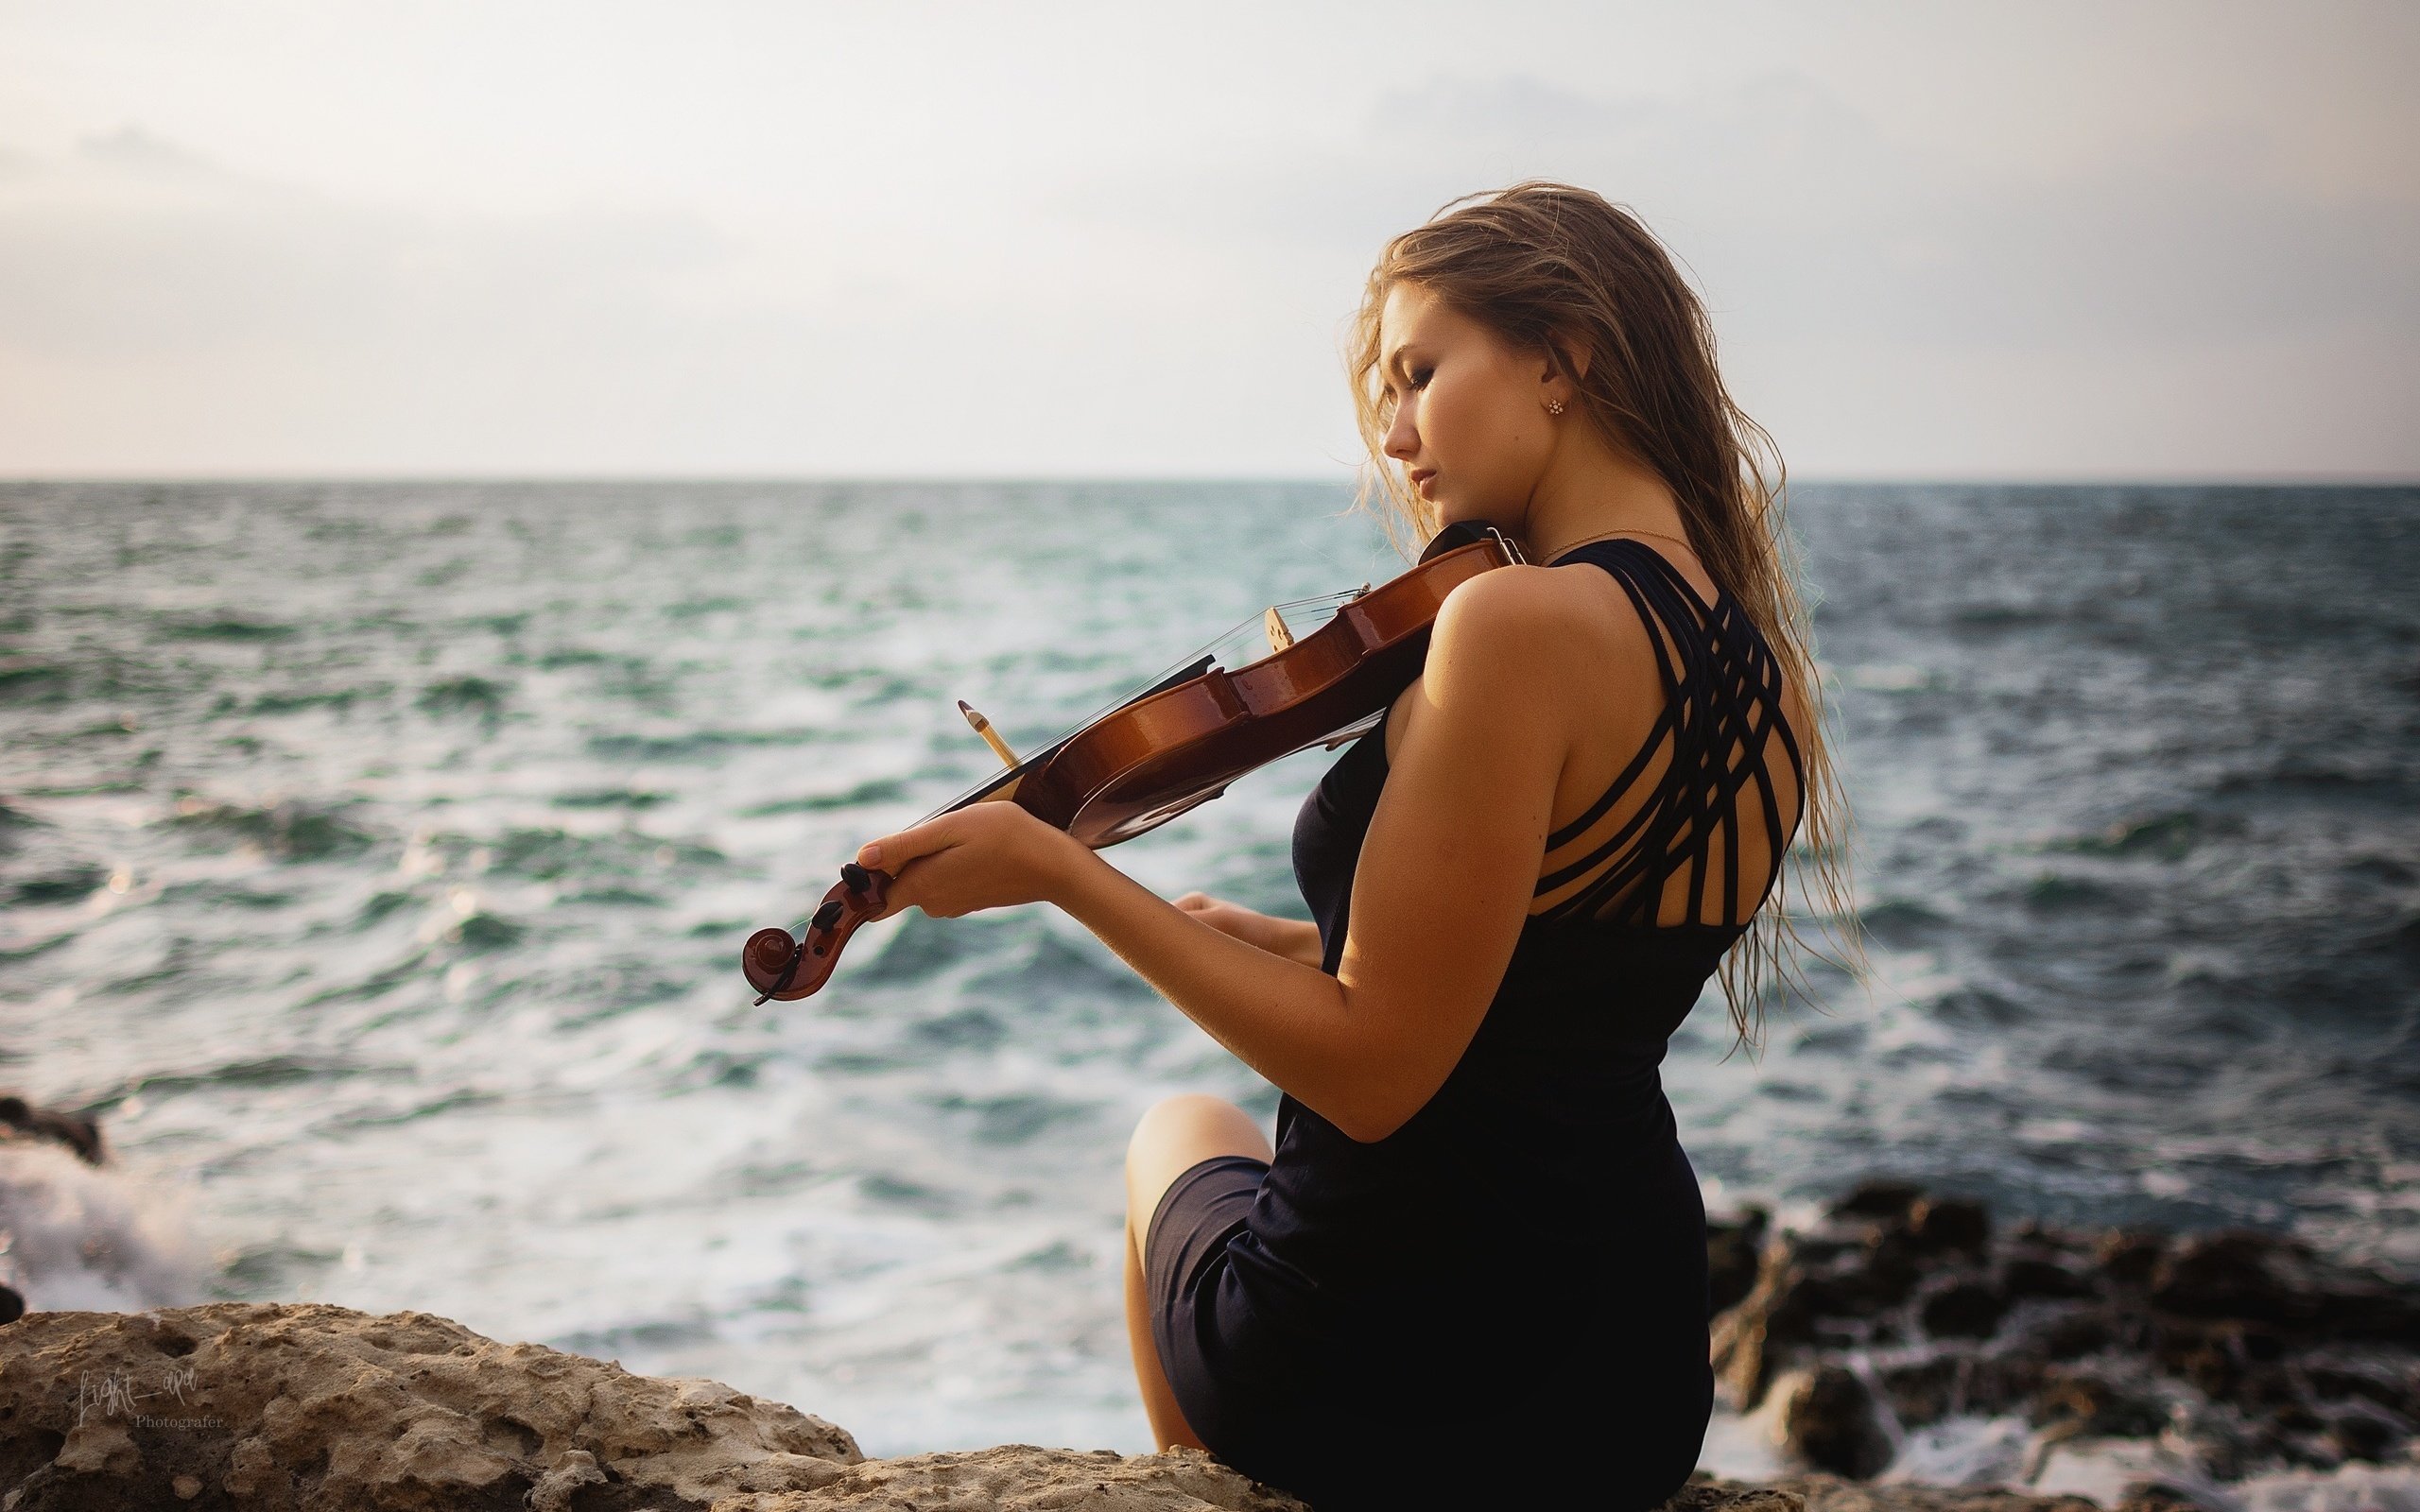 Музыка в современной обработке слушать. Скрипка и море. Девушки со скрипкой. Девушка скрипачка.